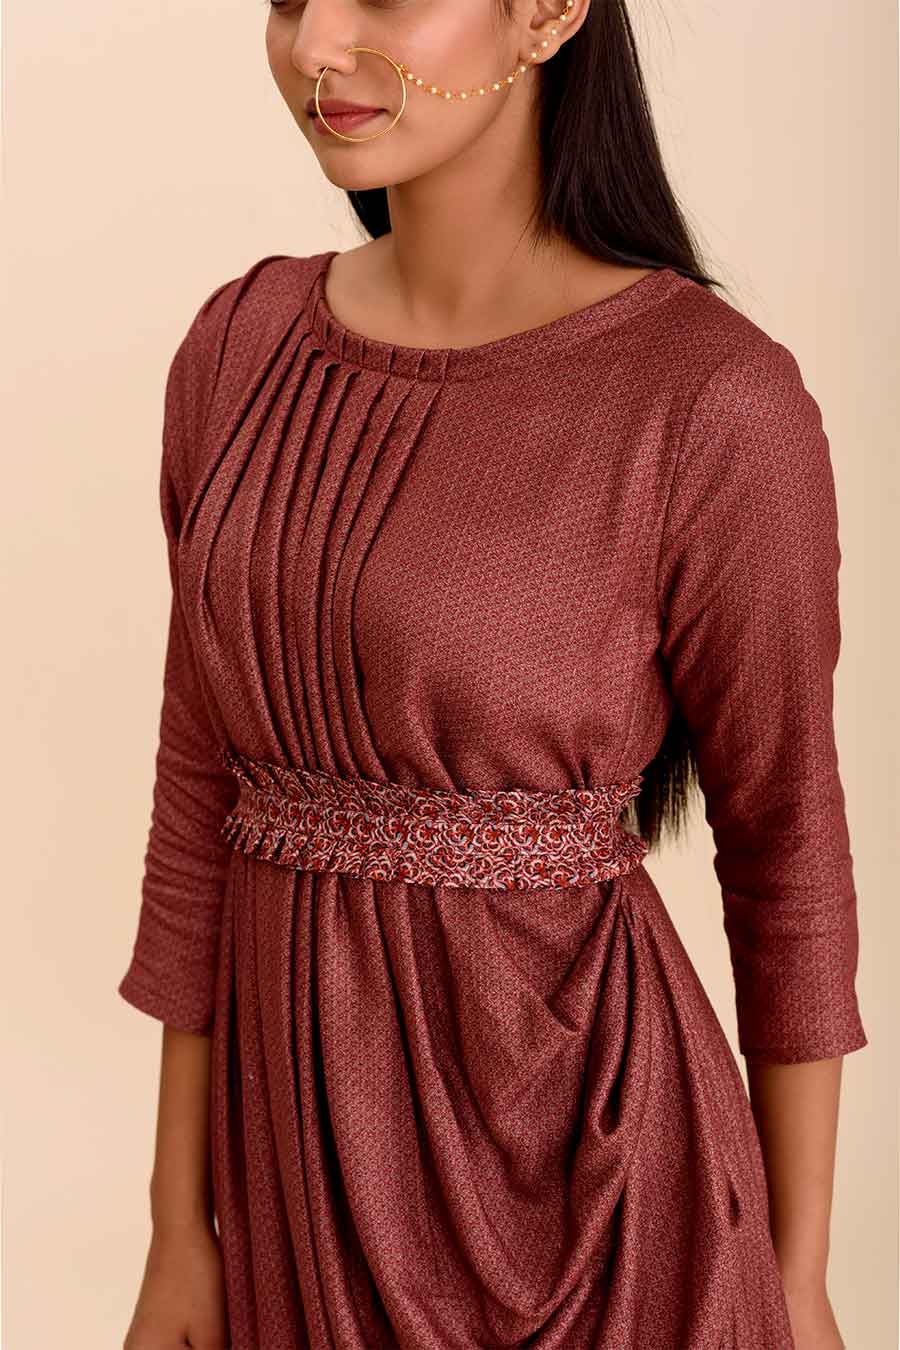 PUSHP - Pre Draped Printed Saree Dress